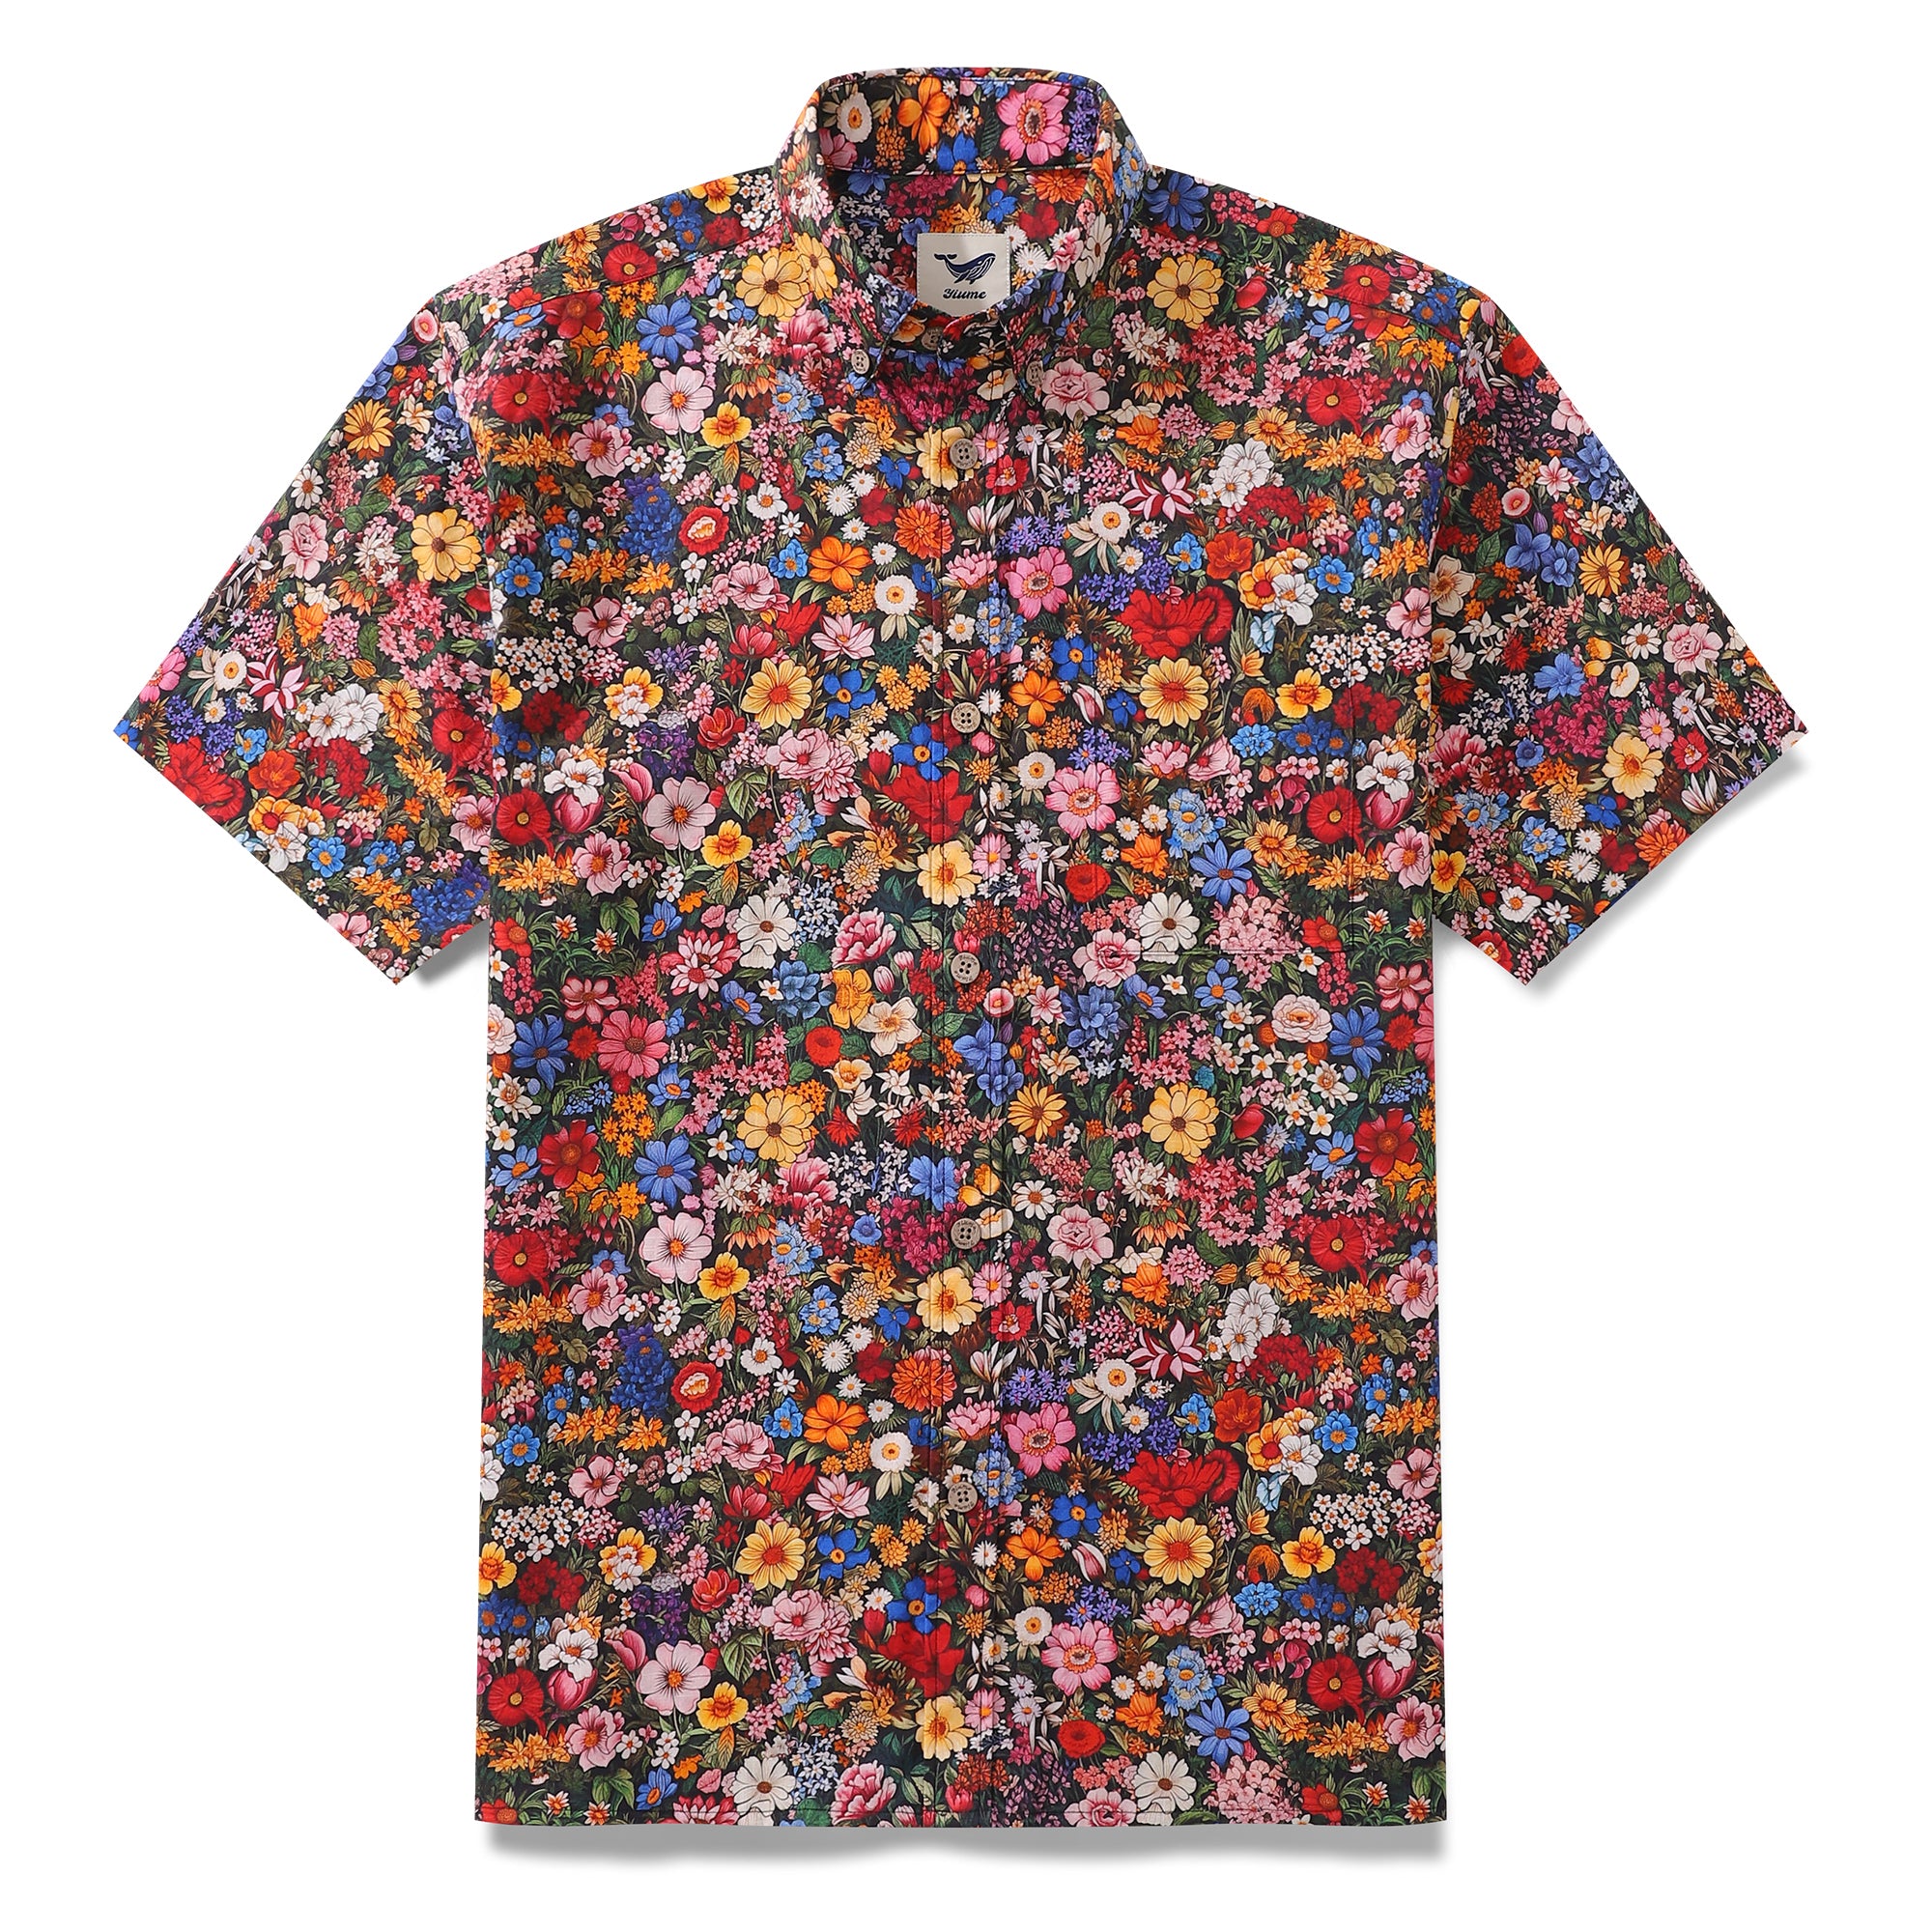 Camisa hawaiana vintage de los años 60 entre las flores, camisa Aloha de manga corta con botones de algodón